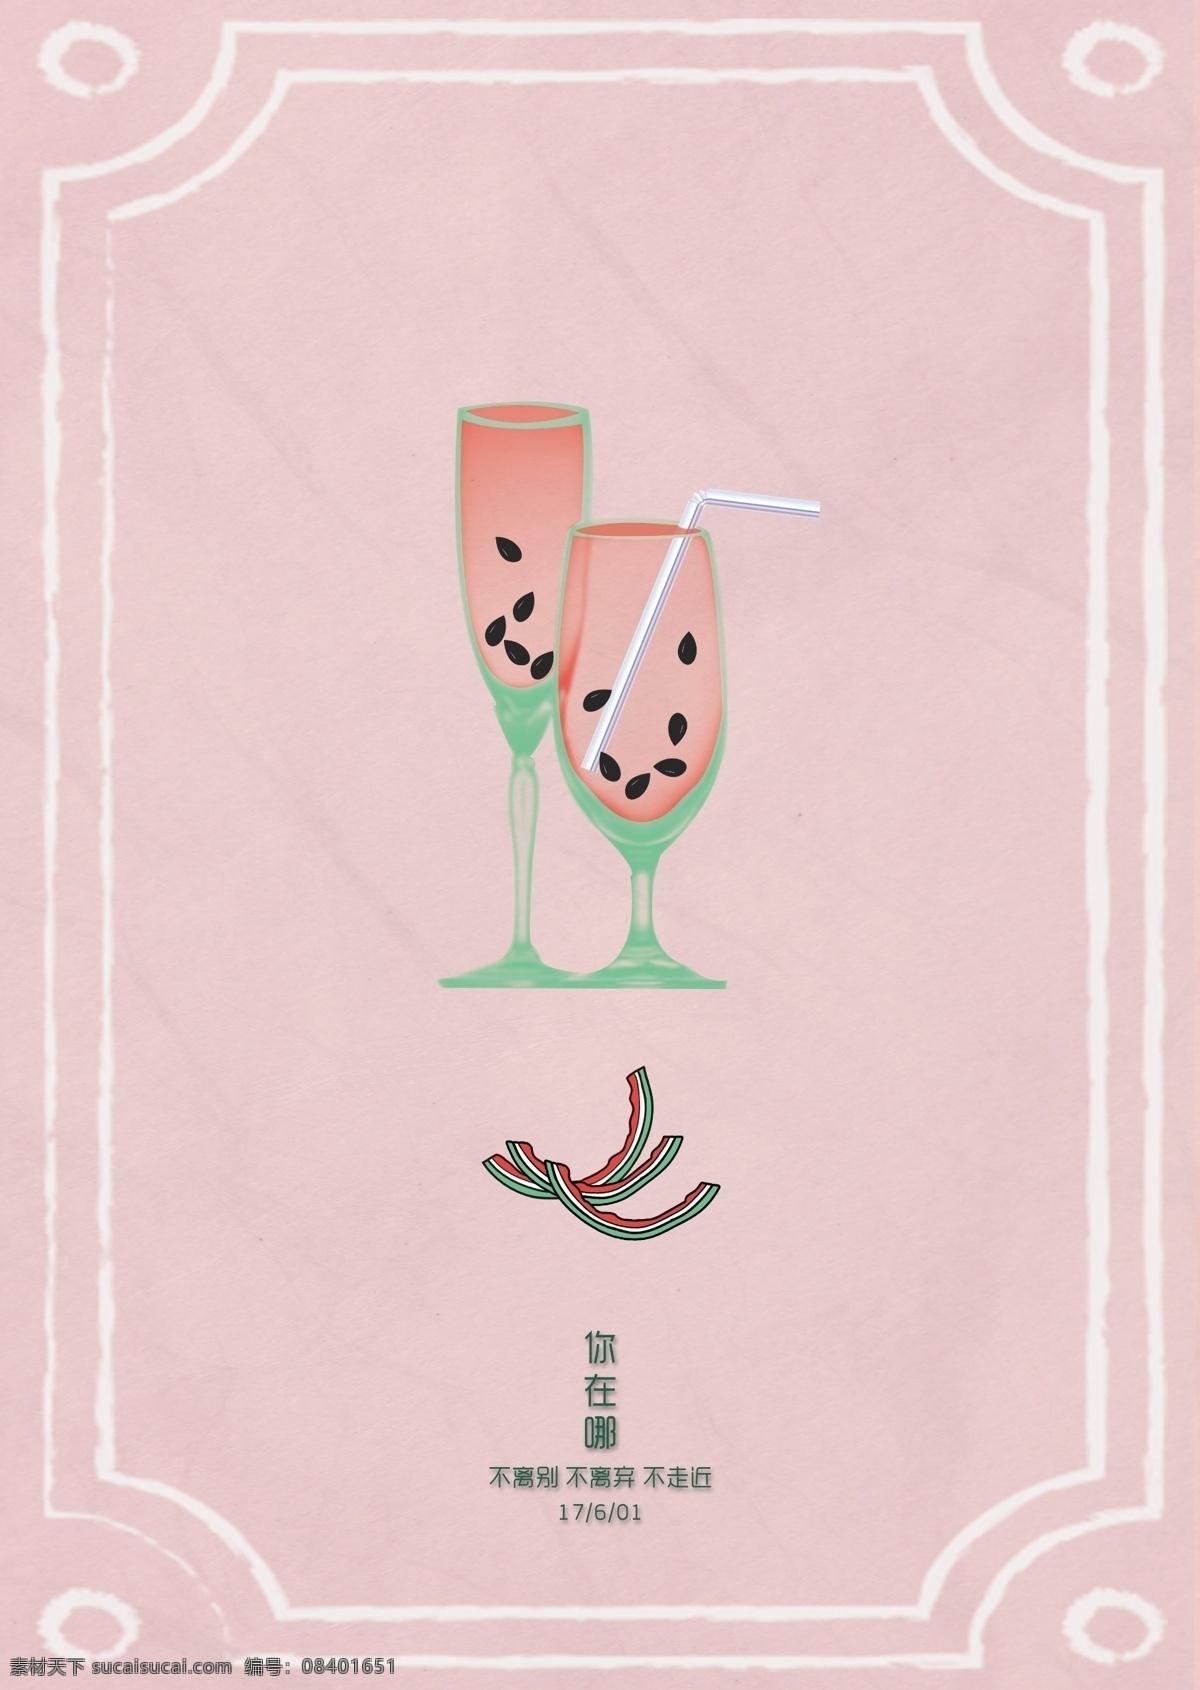 西瓜 唯美 插画 海报 文艺 清新 手绘 文字 粉色 果汁 画册 彩页 日期 夏天 六月 凉爽 你在哪